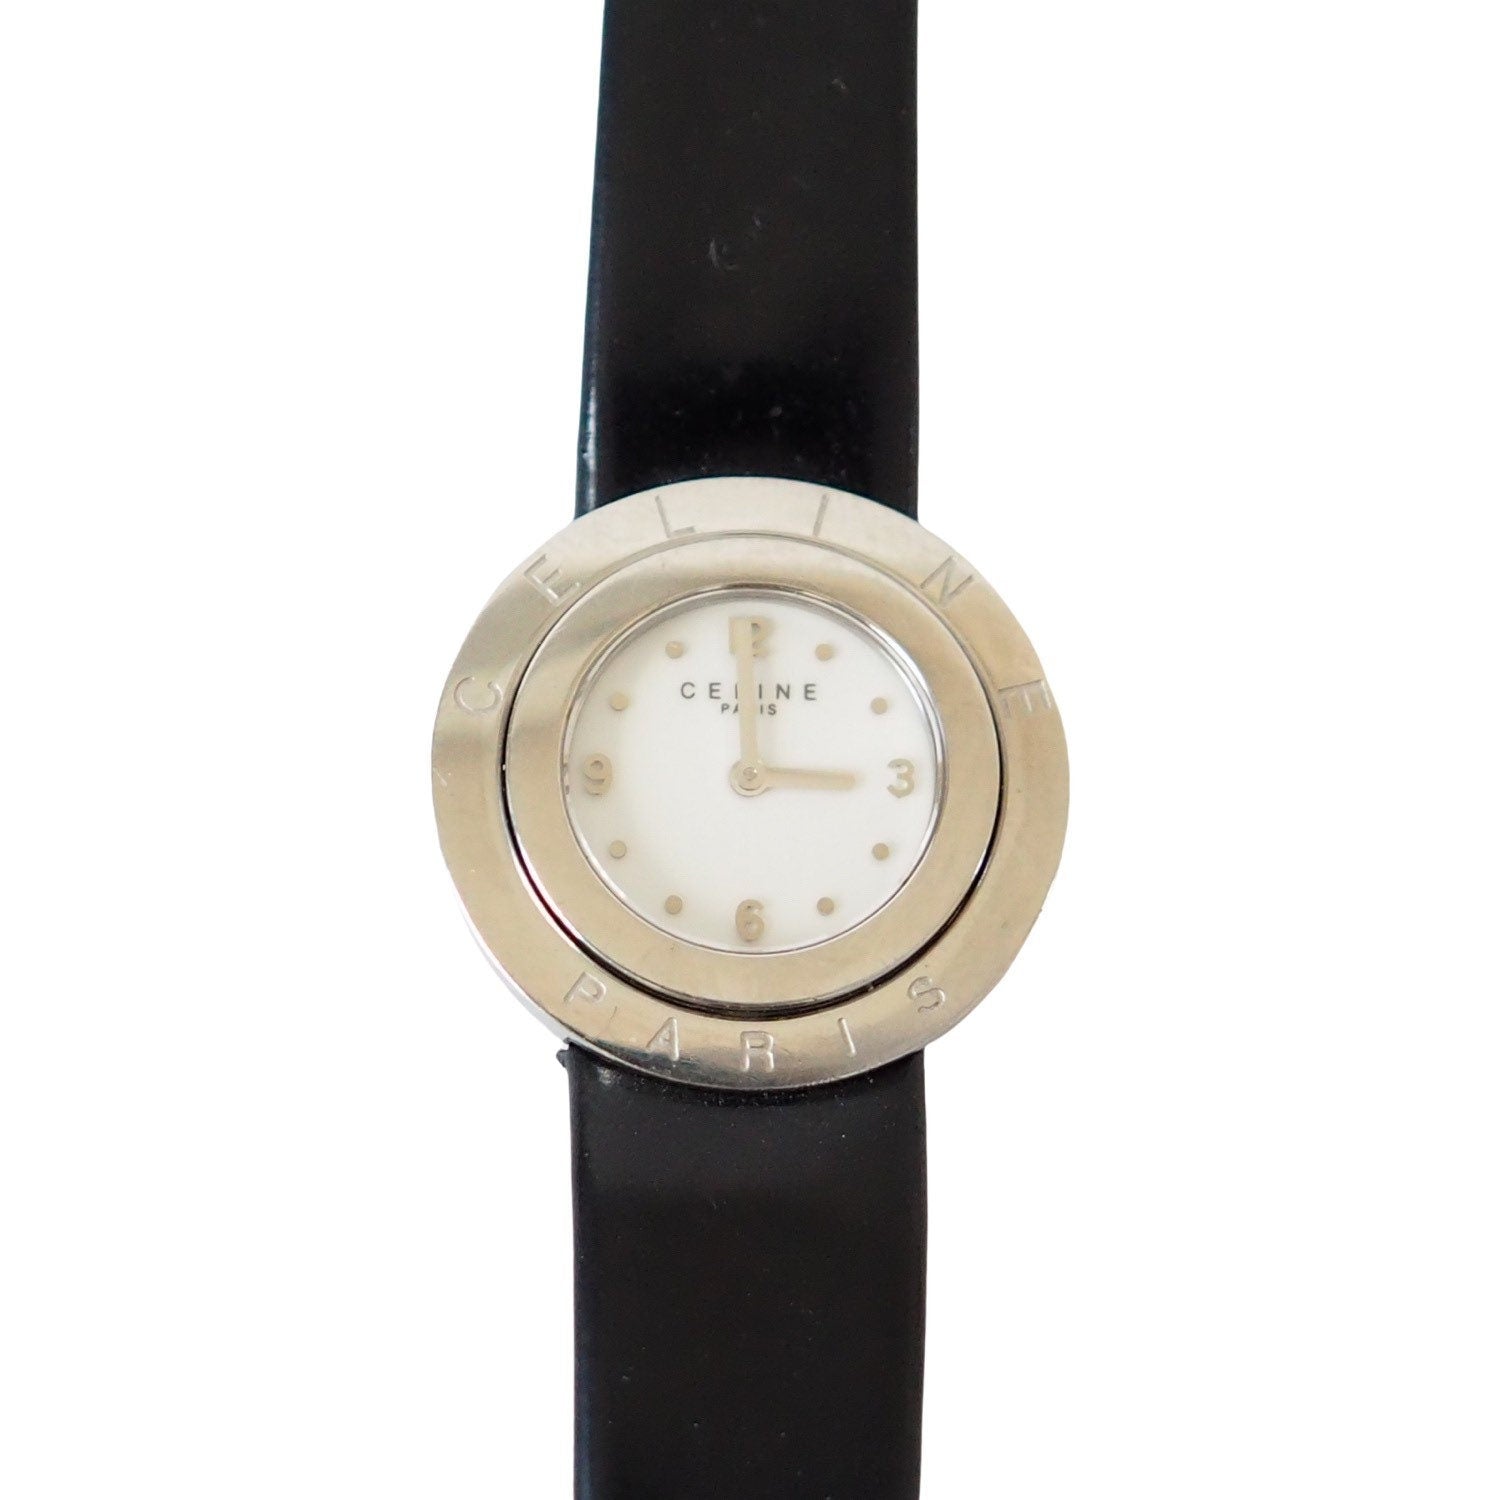 CELINE Watch Wristwatch Circle Face Logo Silver Color Steel Quartz Vintage